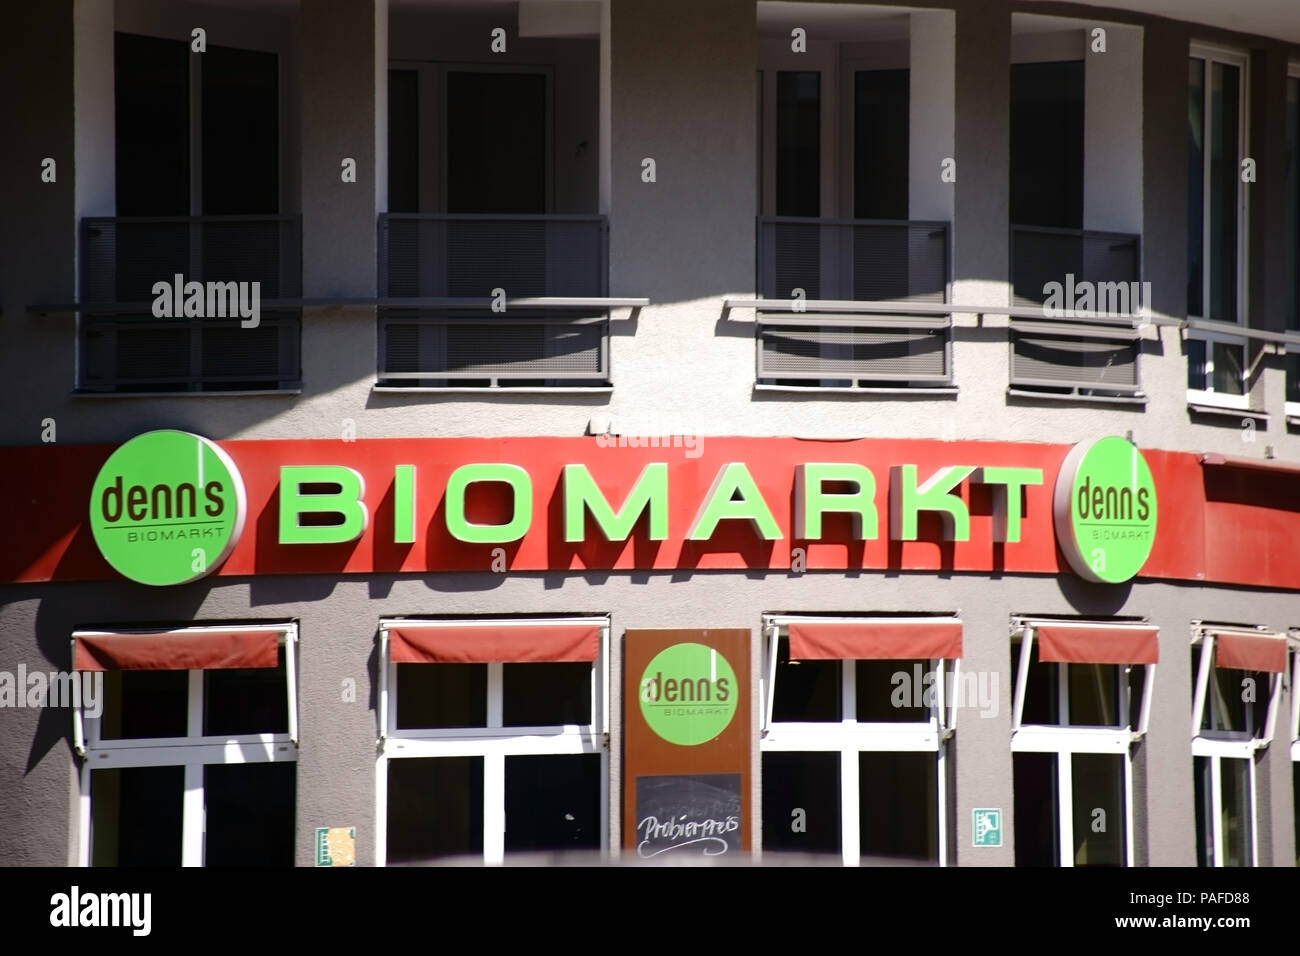 Berlin, Deutschland - 14. Juli 2018: Das Zeichen der Bio-markt Denns über dem Eingang von einem lebensmittelmarkt am 14. Juli 2018 in Berlin. Stockfoto